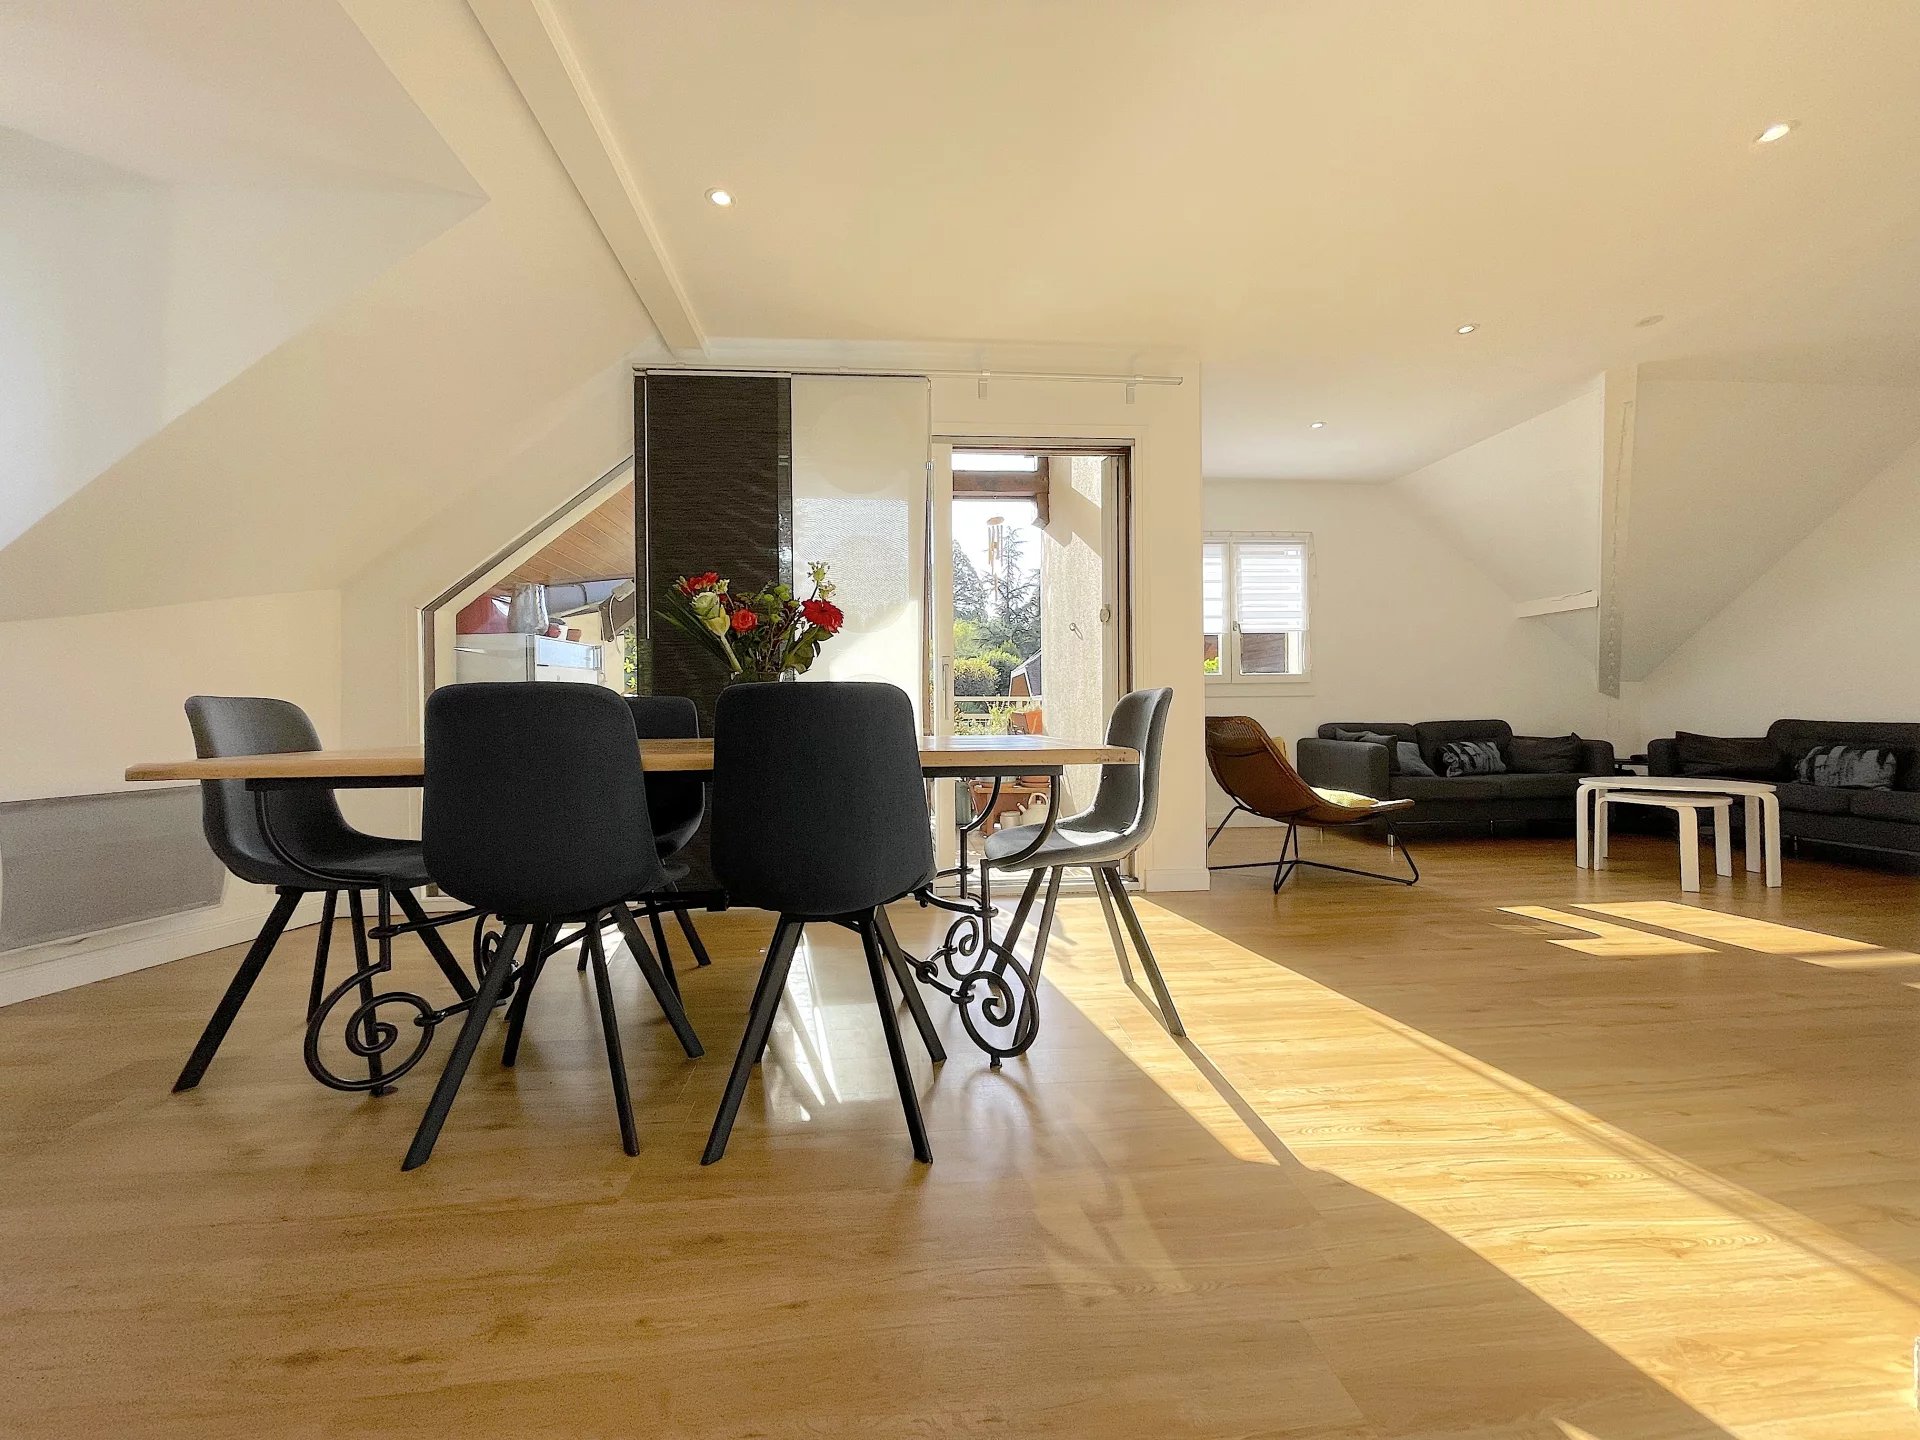 A vendre appartement 3 pièces + mezzanine Menthon-Saint-Bernard - Coeur du village